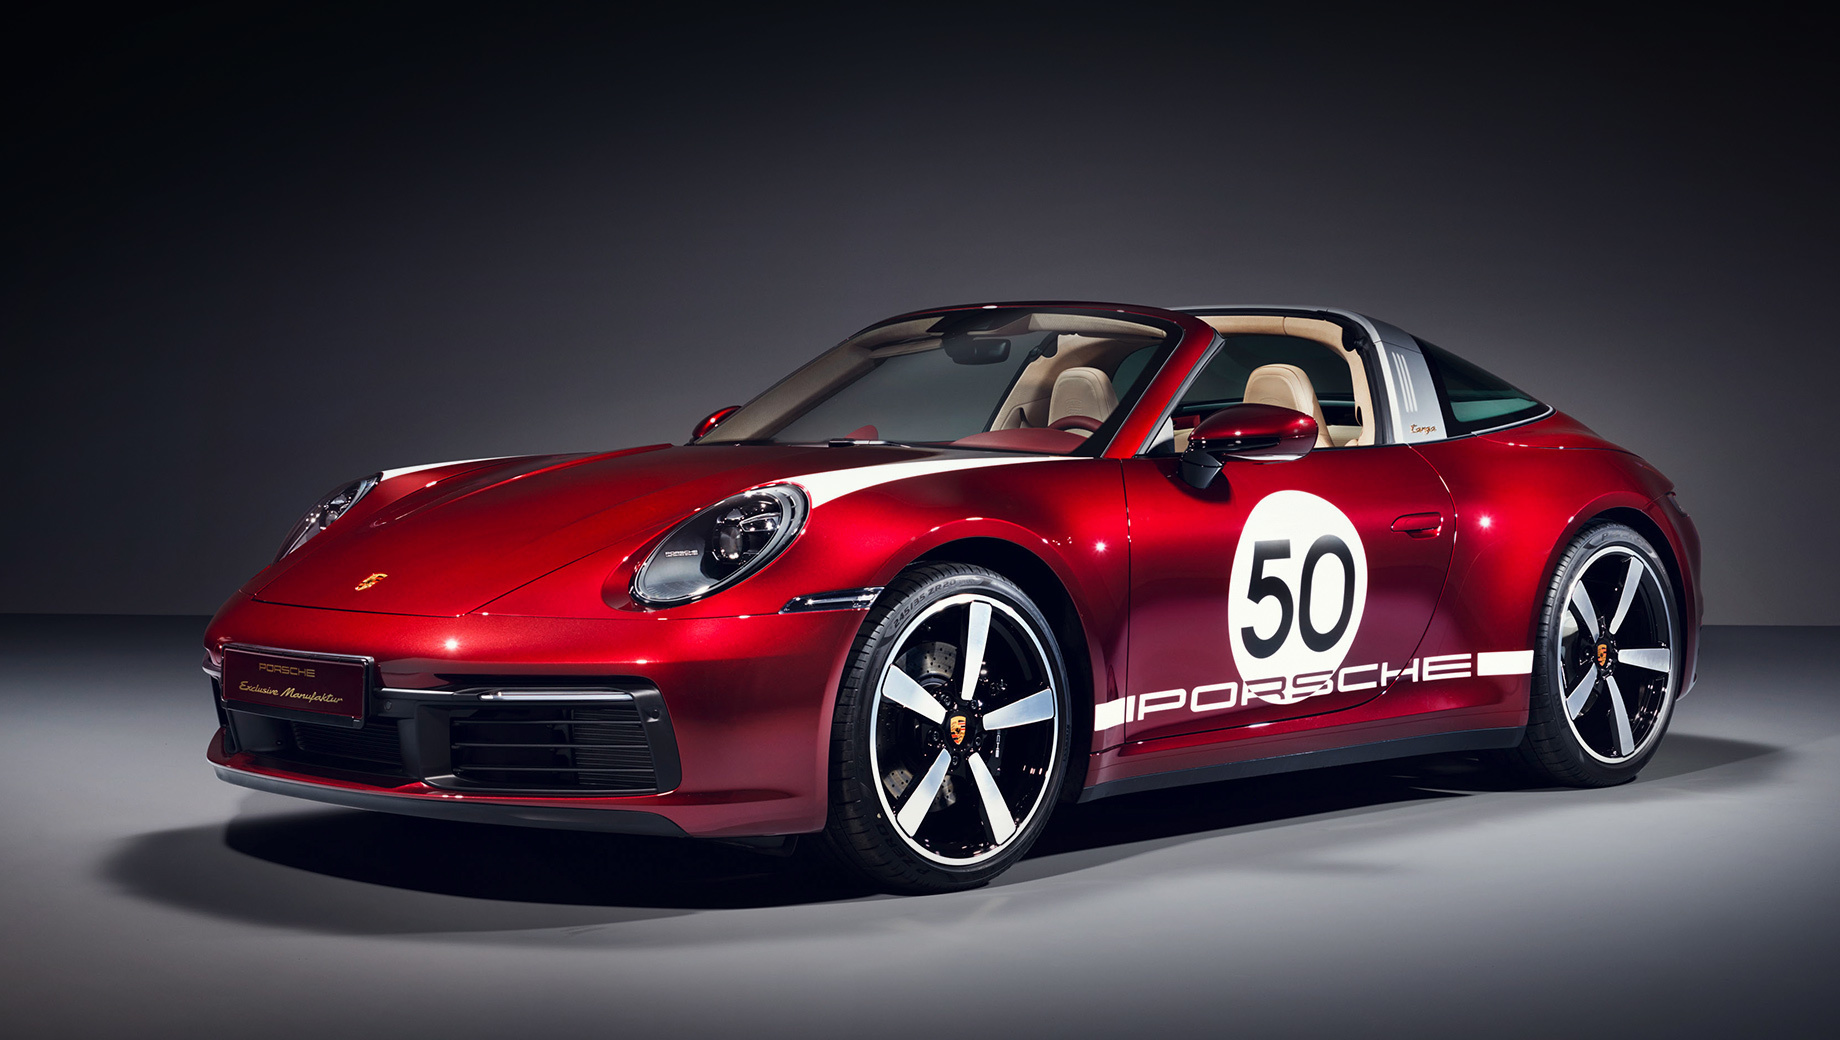 Porsche 911,Porsche 911 targa. Заказы на двухдверку Targa 4S Heritage Design уже принимаются, а первые машины появятся в шоу-румах осенью. Можно будет выбрать один из пяти базовых цветов кузова (вишнёвый, чёрный, красный, серебристый или светло-серый) или заказать индивидуальный колер. Диаметр колёс Fuchs (отсылка к Porsche 911 S 1967 года) — 20 дюймов спереди и 21 дюйм сзади.